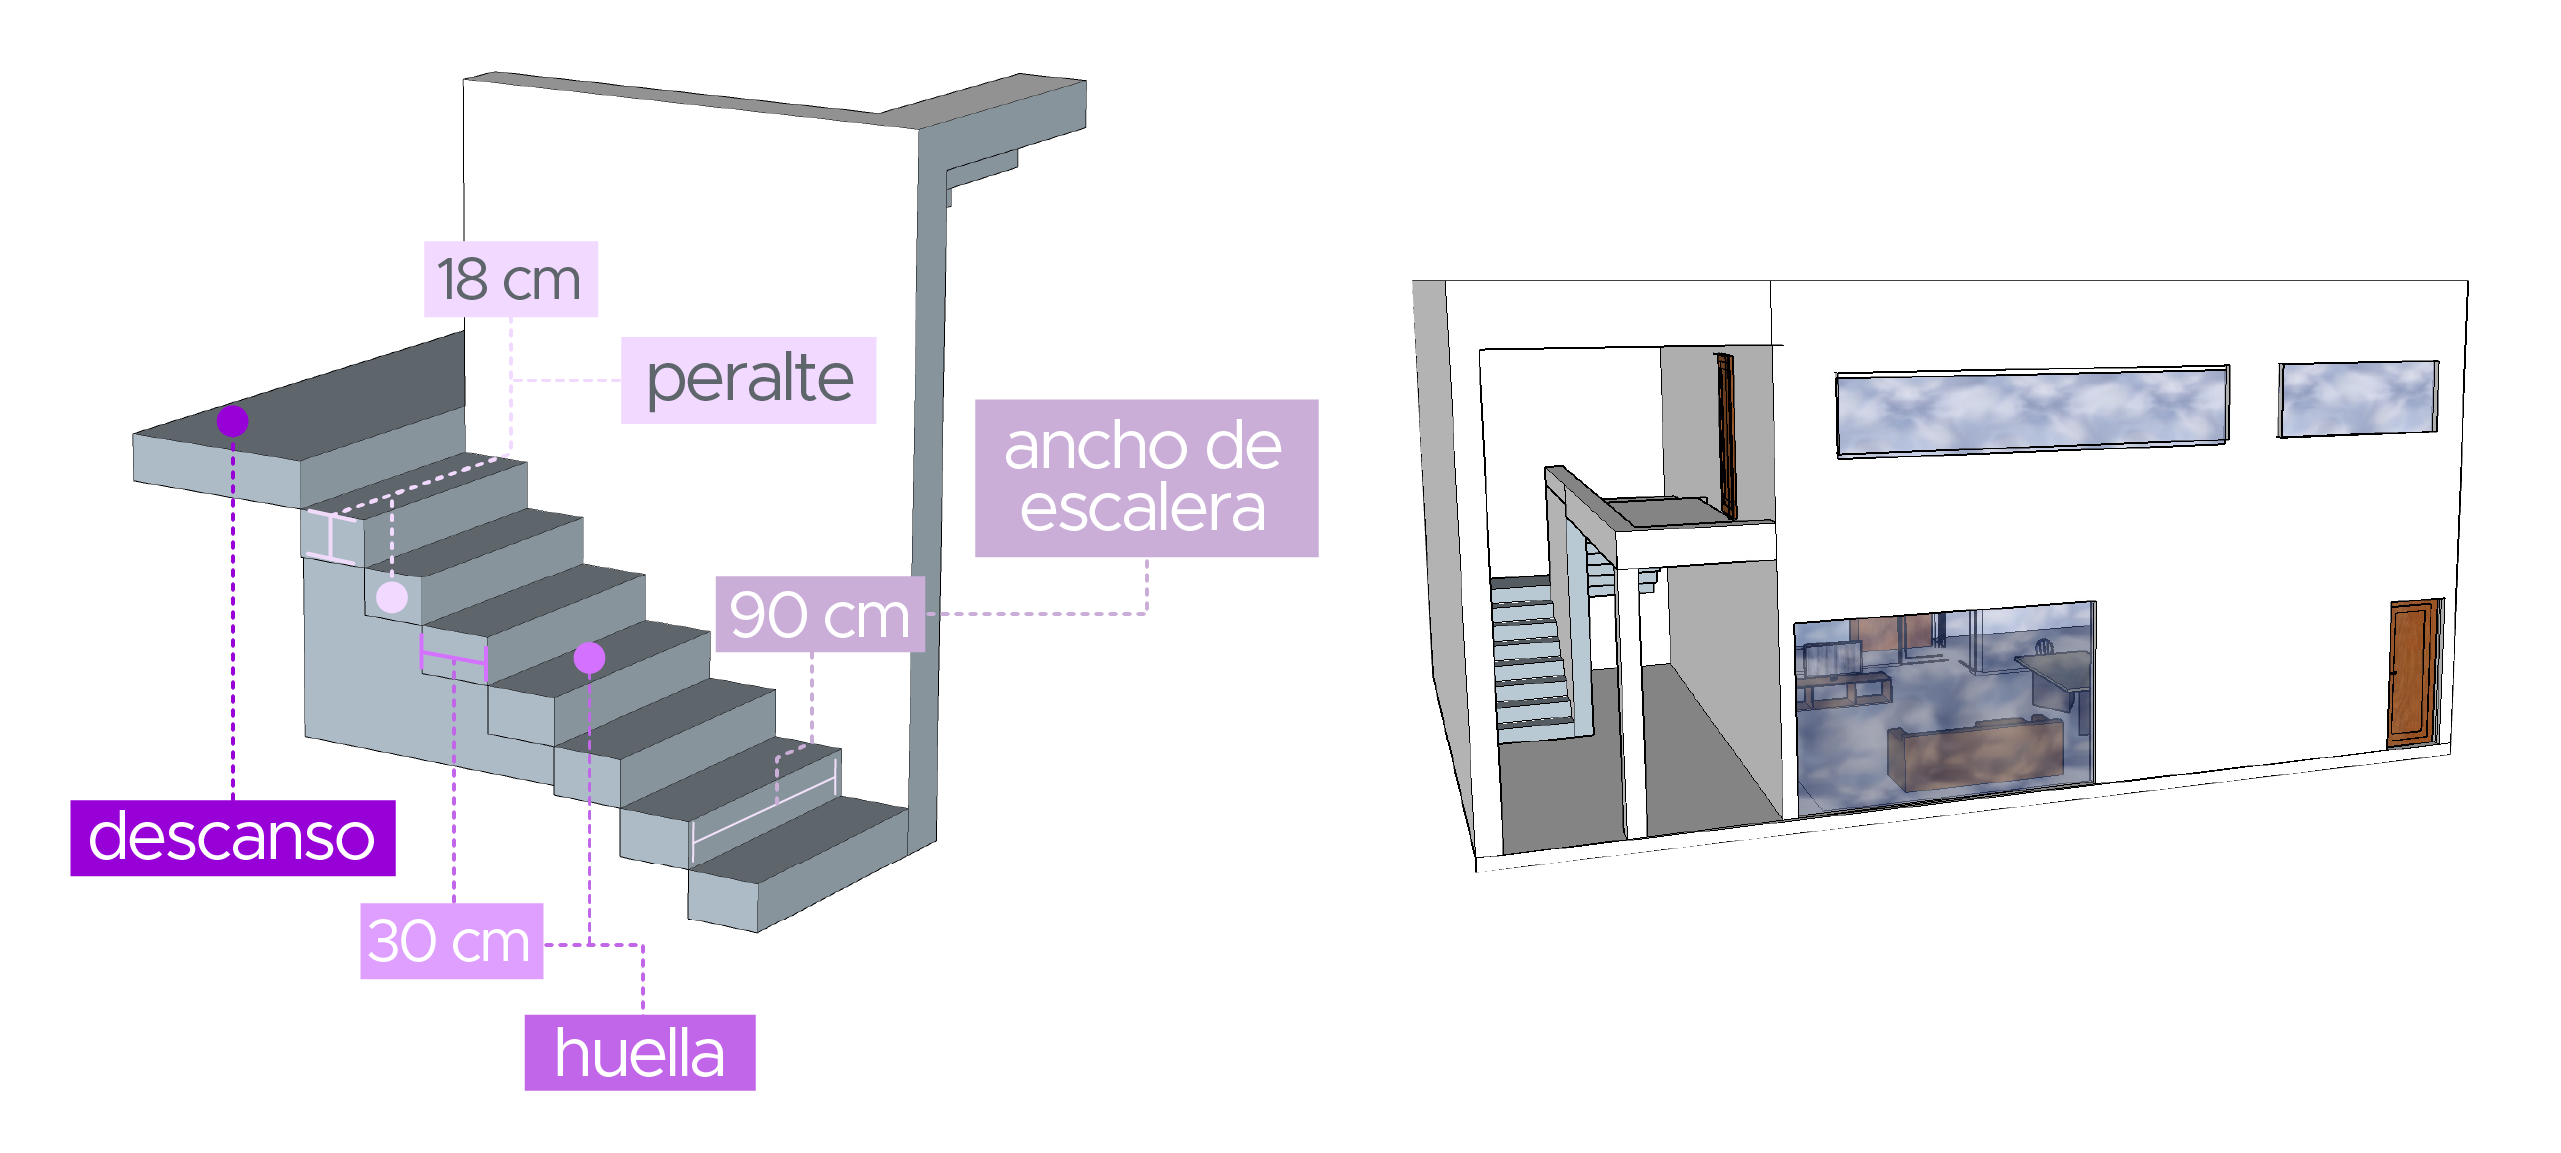 En el diagrama presentado se muestran los elementos y medidas que se deben considerar para una escalera de concreto: Dieciocho centímetros de peralte, noventa centímetros el ancho de la escalera, treinta centímetros debe medir su huella, y se debe agregar un descanso